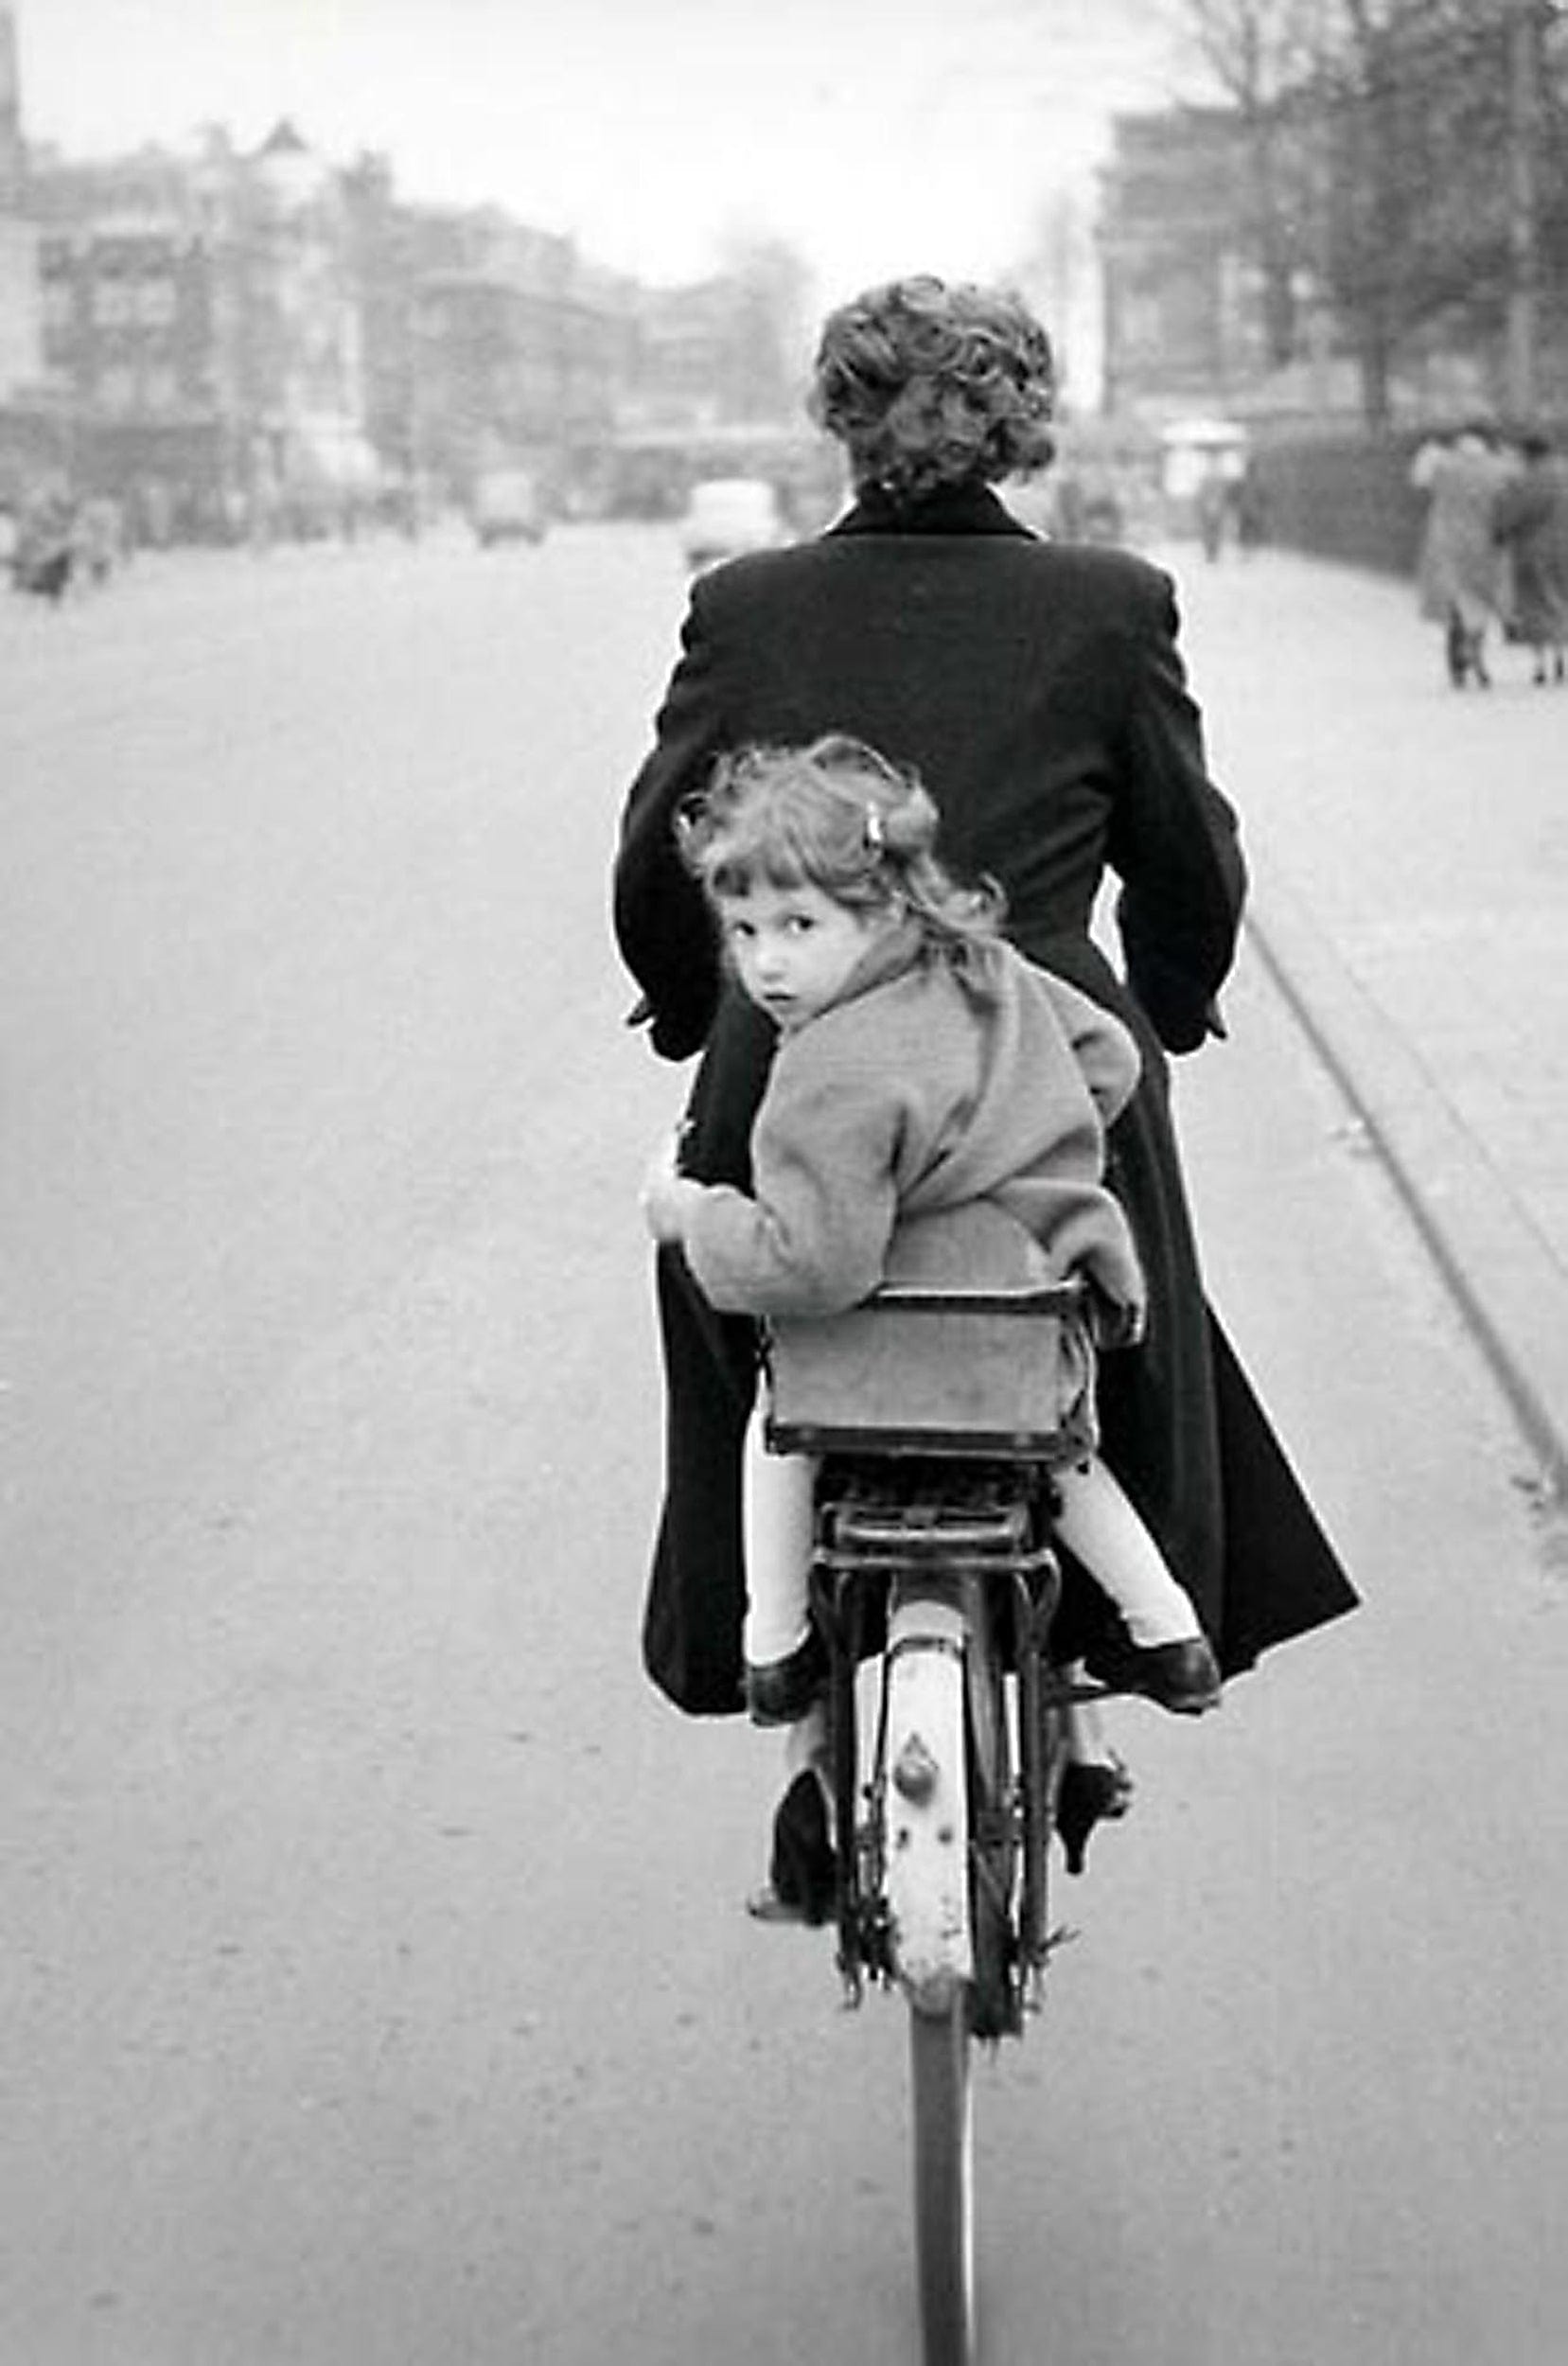 Brent Hannon photo Girl on Rear of Bike Copenhagen 1956, framed Art Works Gallery